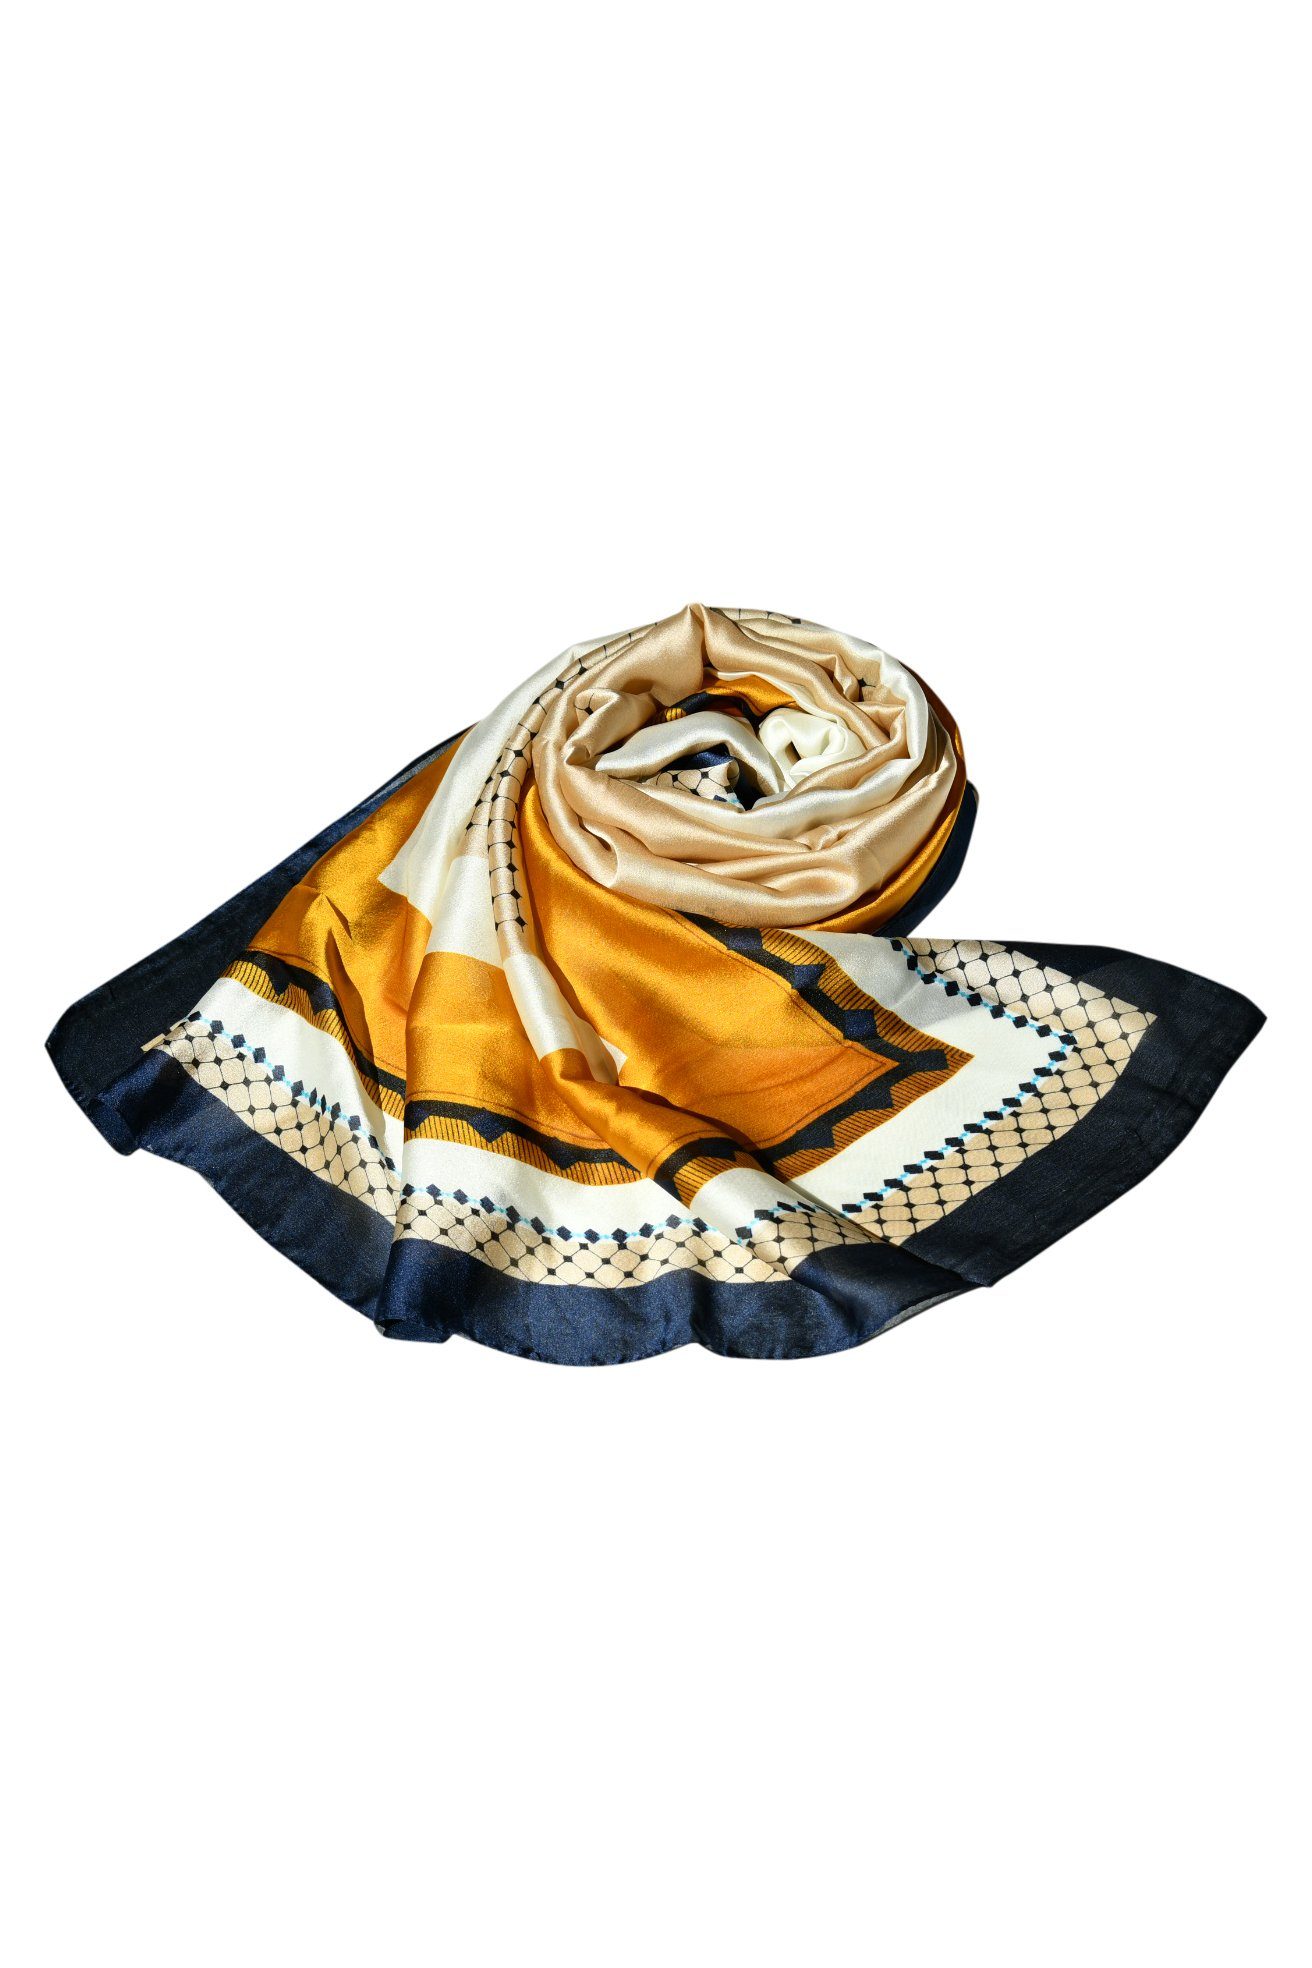 Blue Chilli Schal Hochwertiger Schal Modedesigner bedruckter Seidenschal für Frauen, Stilvoller Kopftuch aus Seide, Party, Eleganz für jedes Outfit Design4